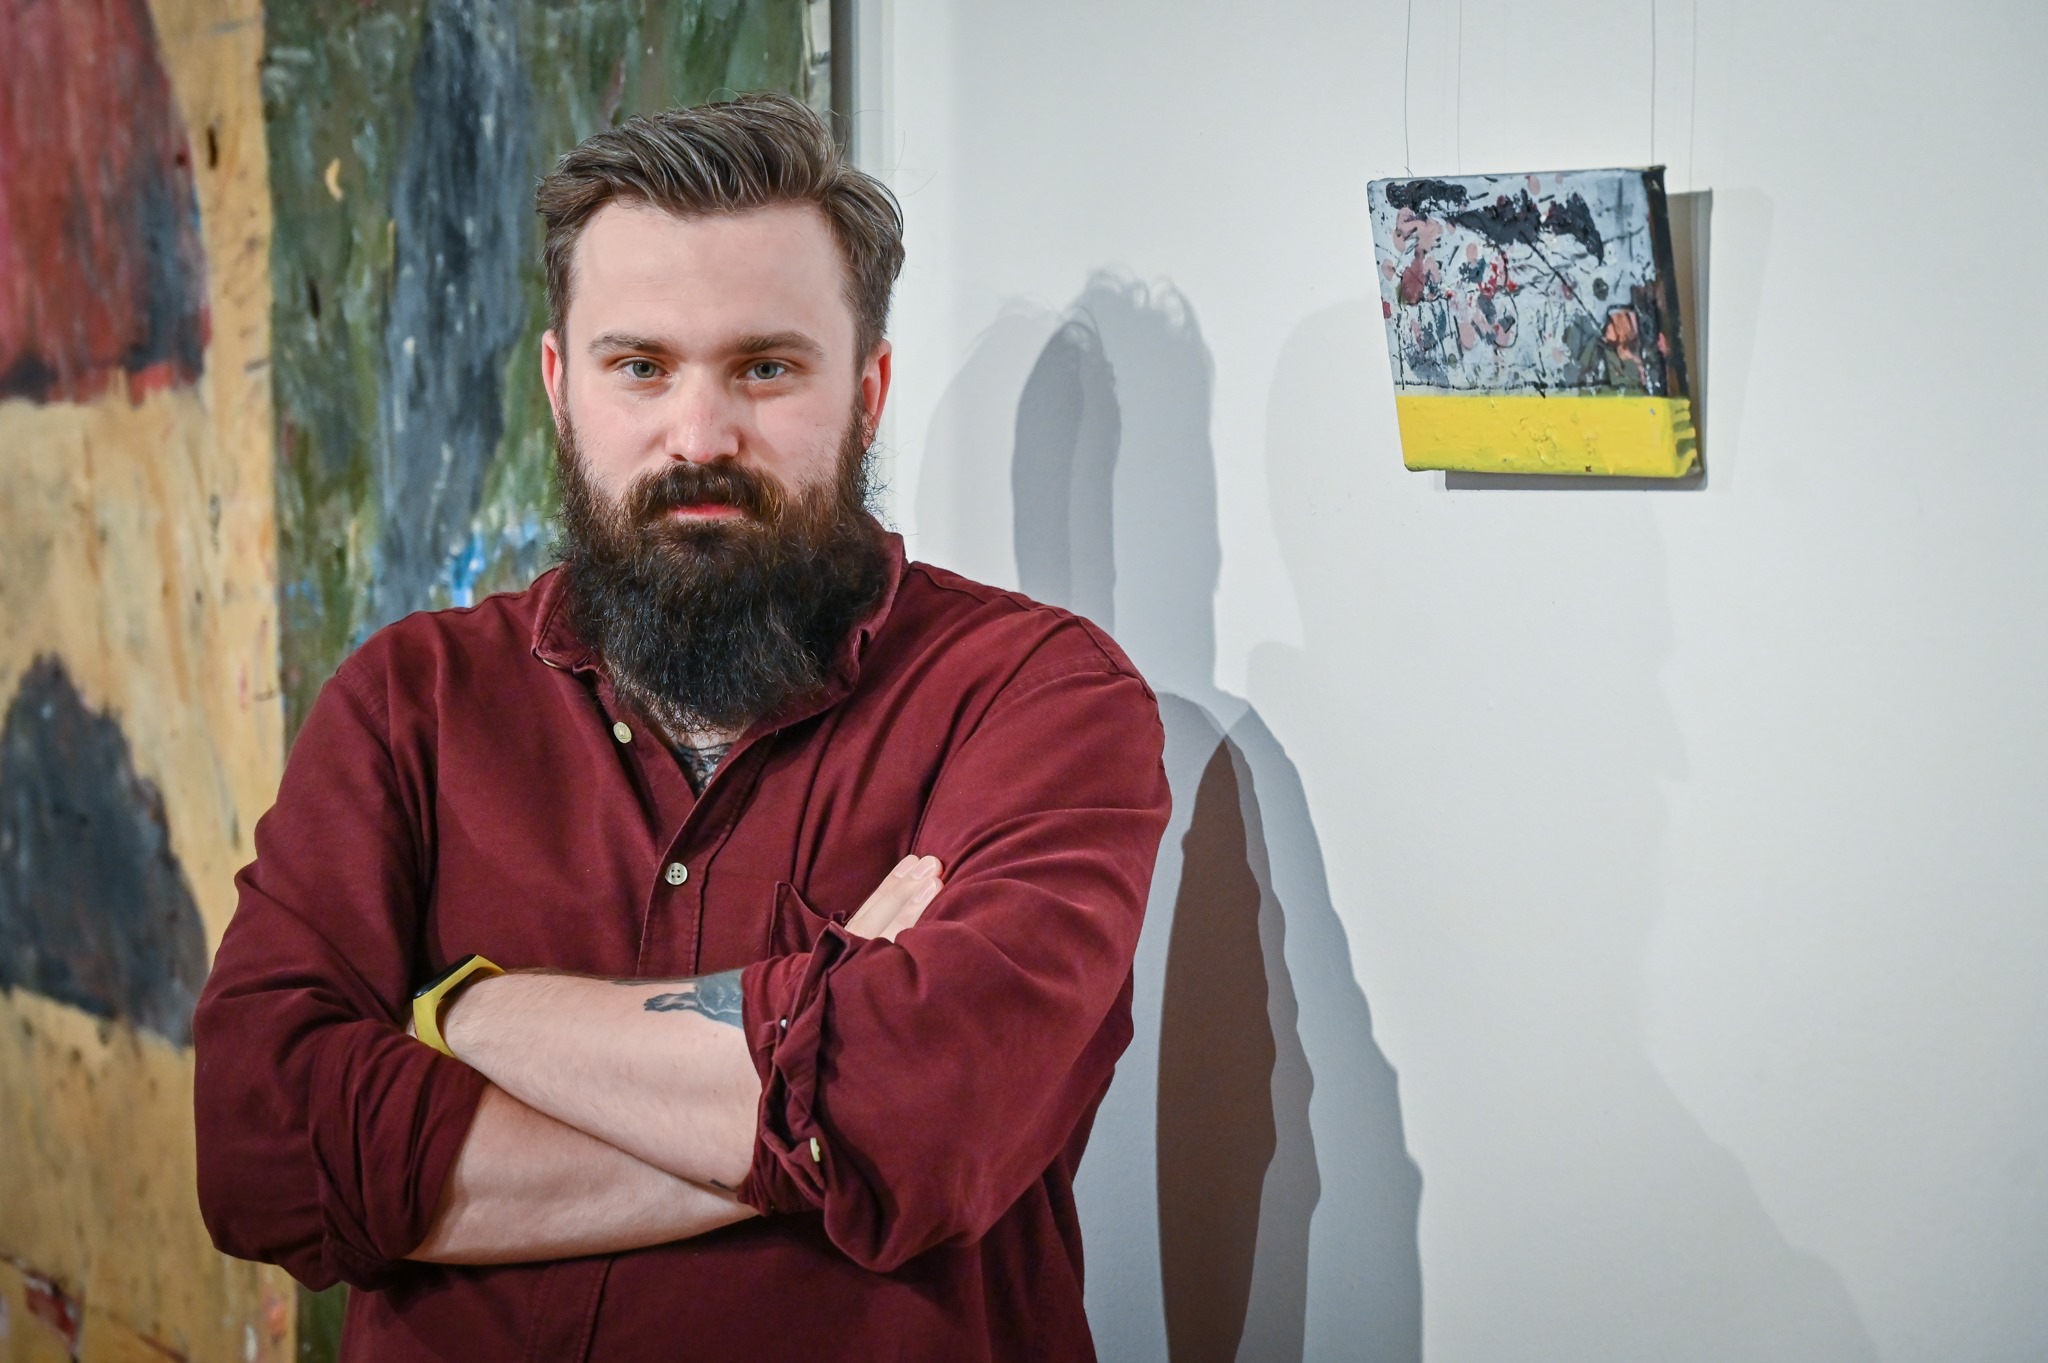 Malarstwo Mateusza Pawełczyka zagości w Ośrodku Promocji Kultury "Gaude Mater" 1